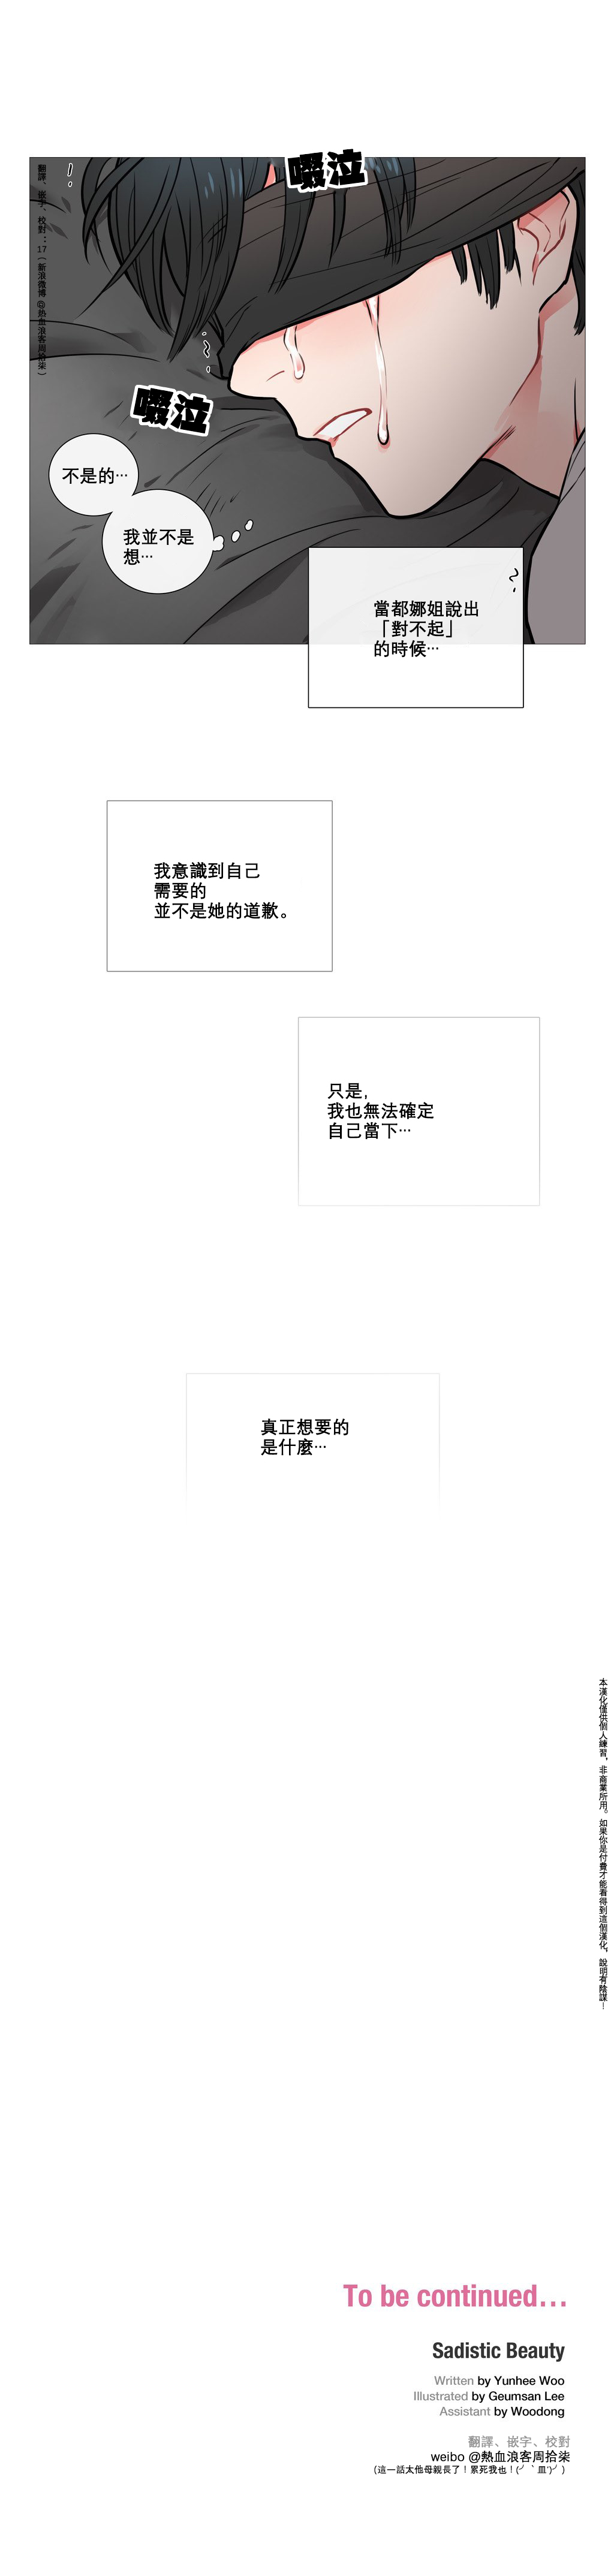 【金山】サディスティックビューティーCh.1-15【中国語】【17汉化】